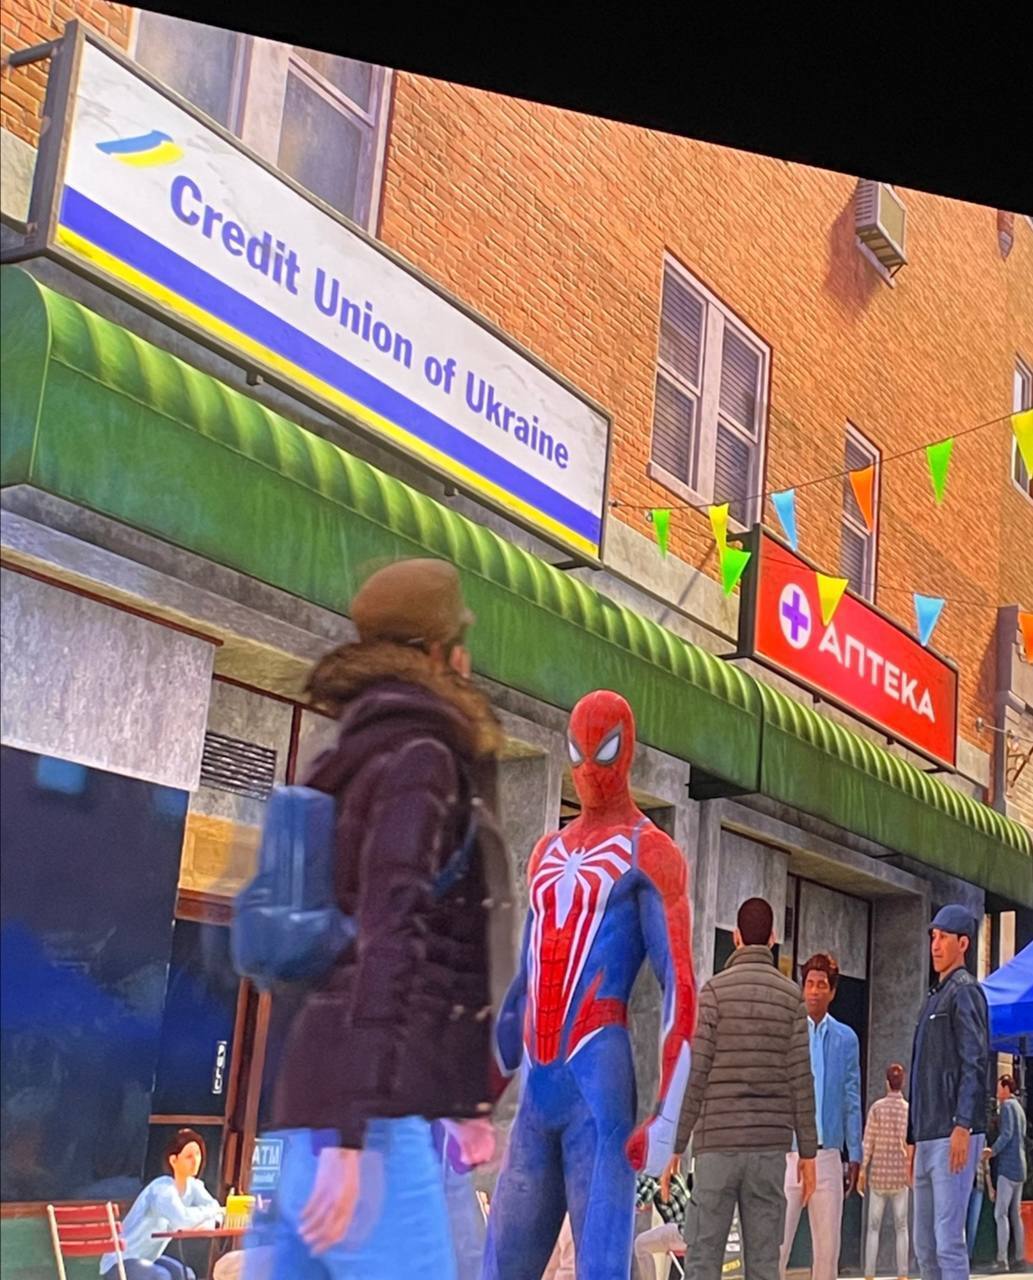 Ресторан "Тризуб", борщ и сине-желтые флаги: нашумевшую игру Marvel's Spider-Man 2 заполонила украинская символика. Первые кадры